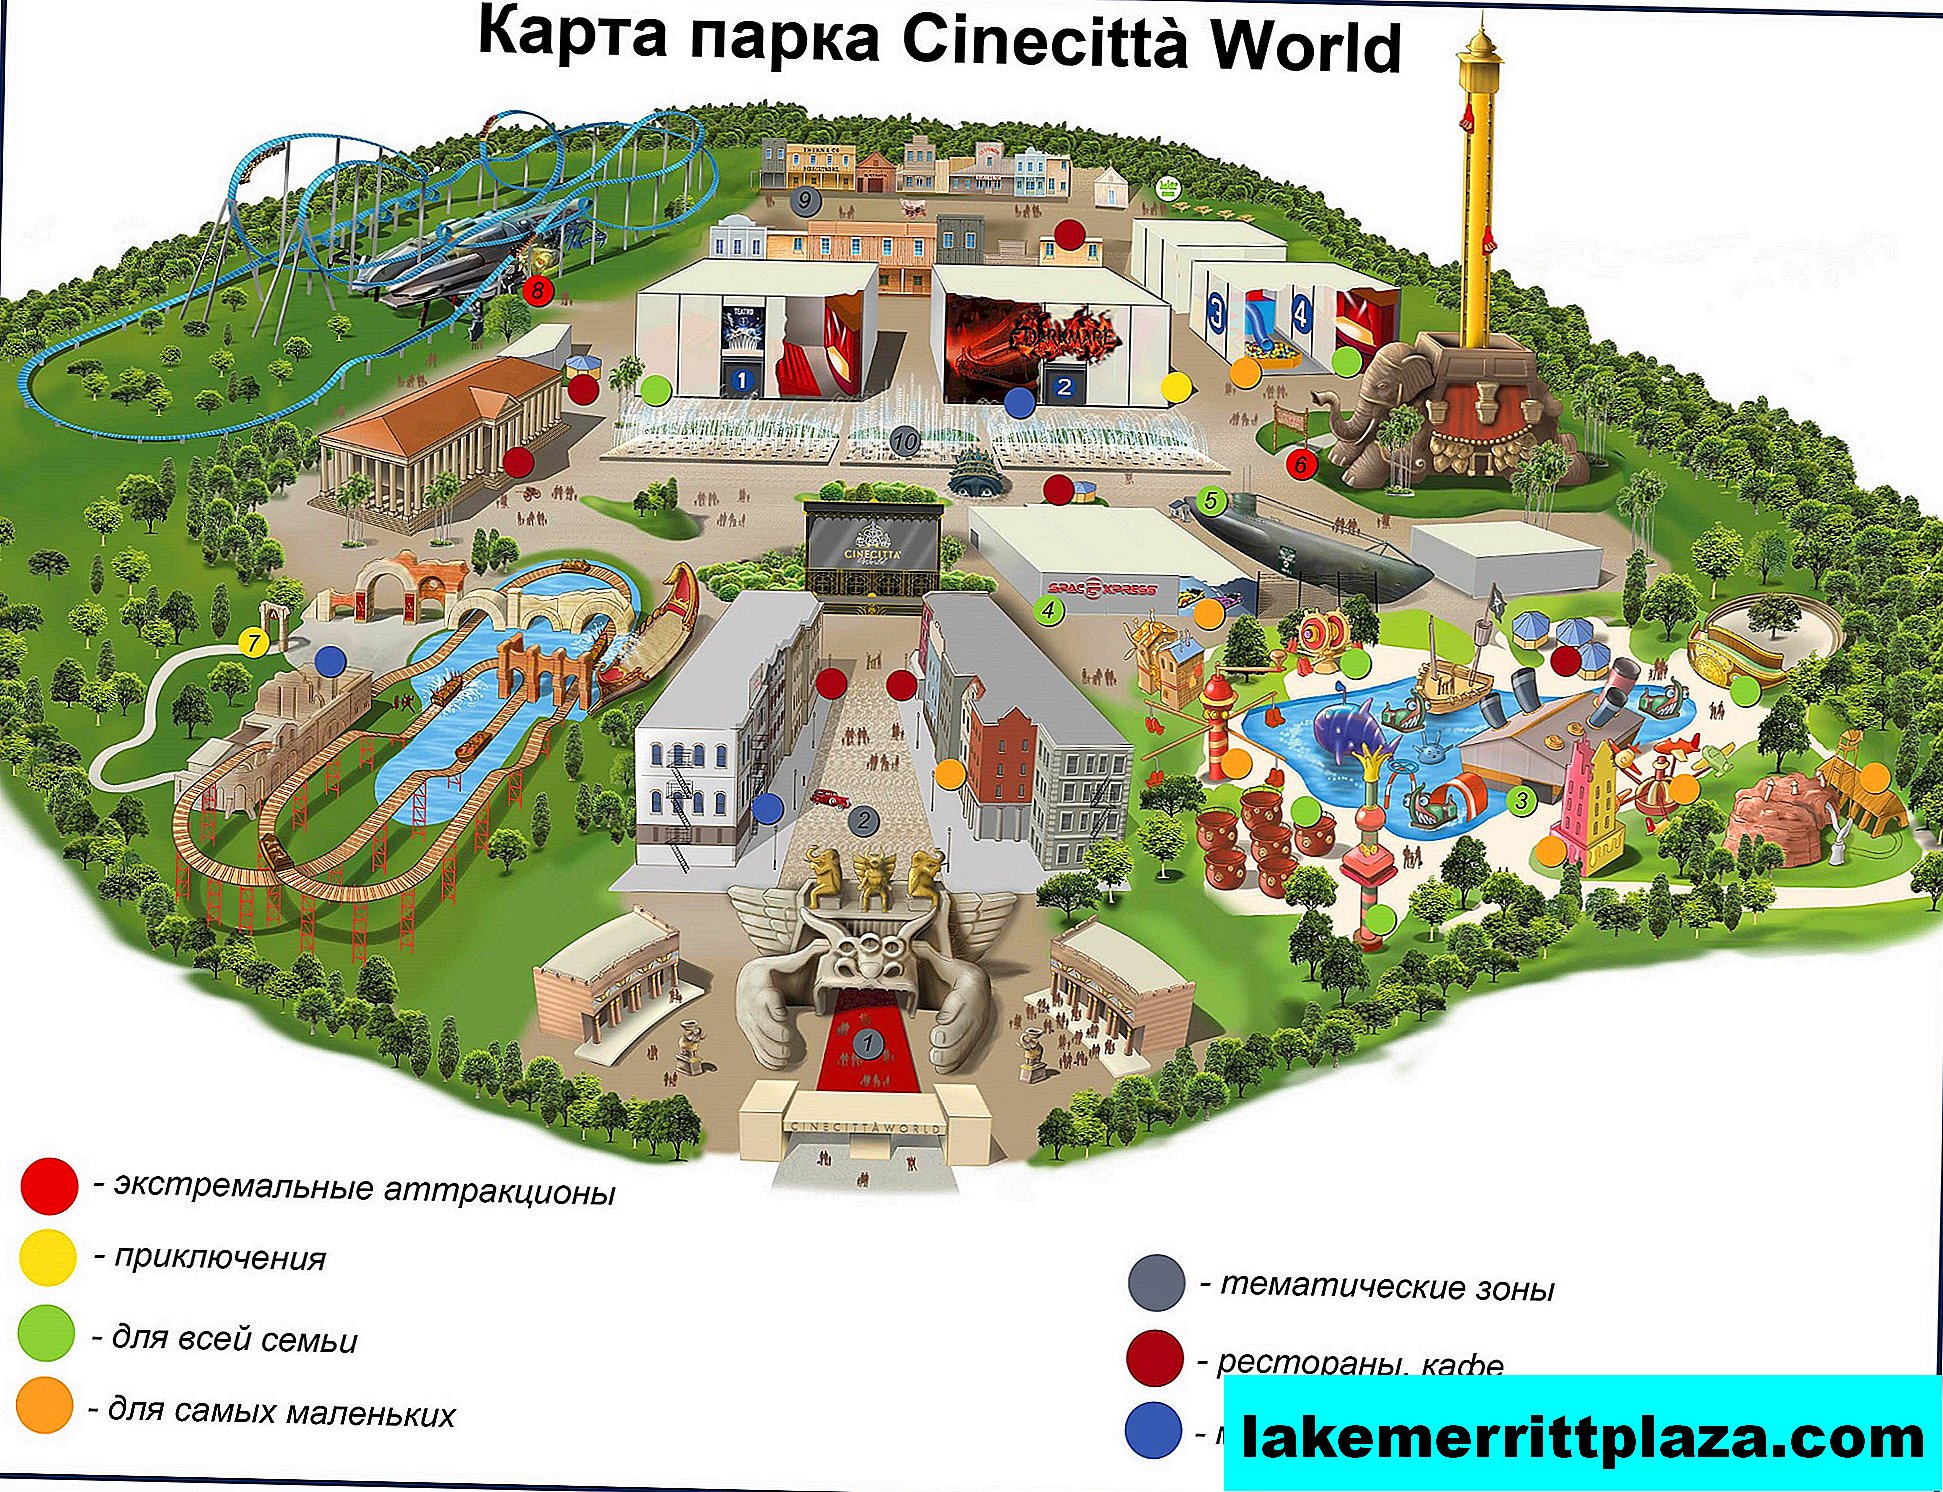 Cinechitta World - Le premier parc de cinéma d'Italie pour enfants et adultes